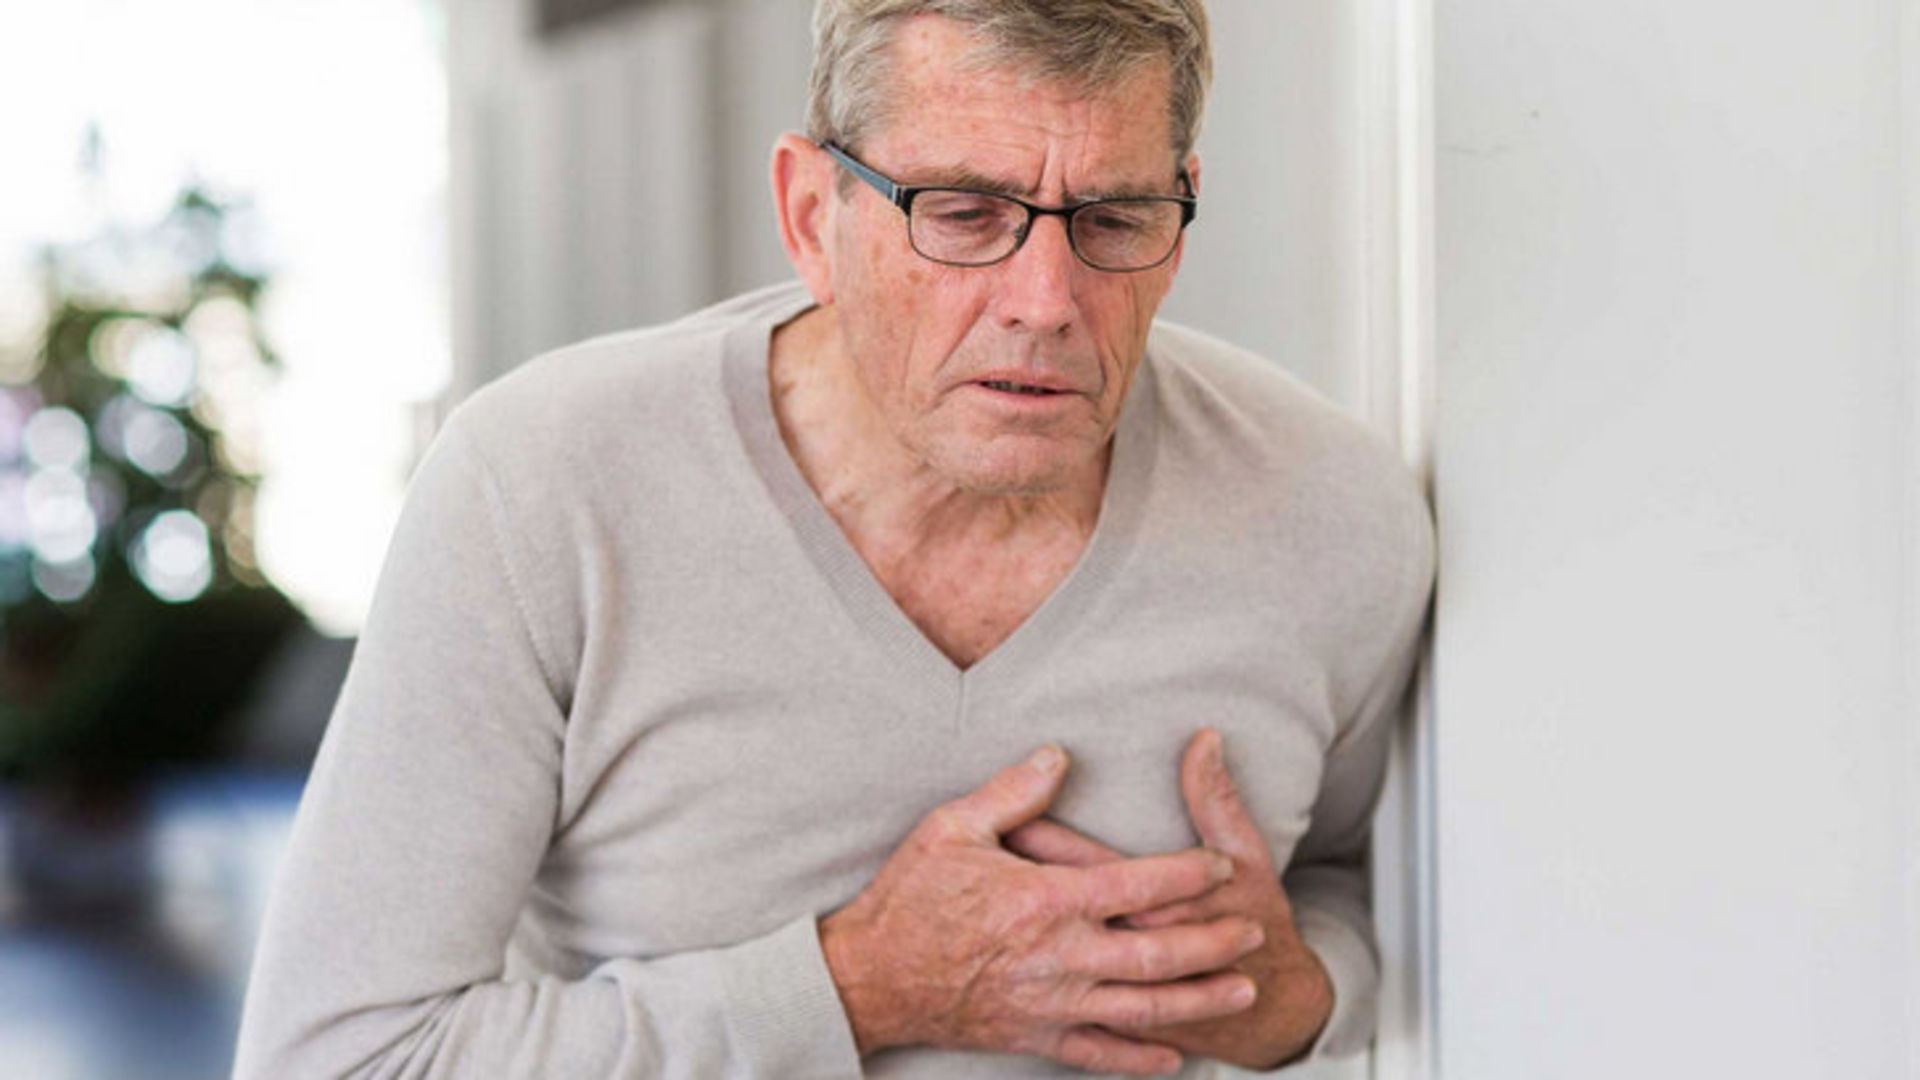 Kalp krizi belirtileri nelerdir?